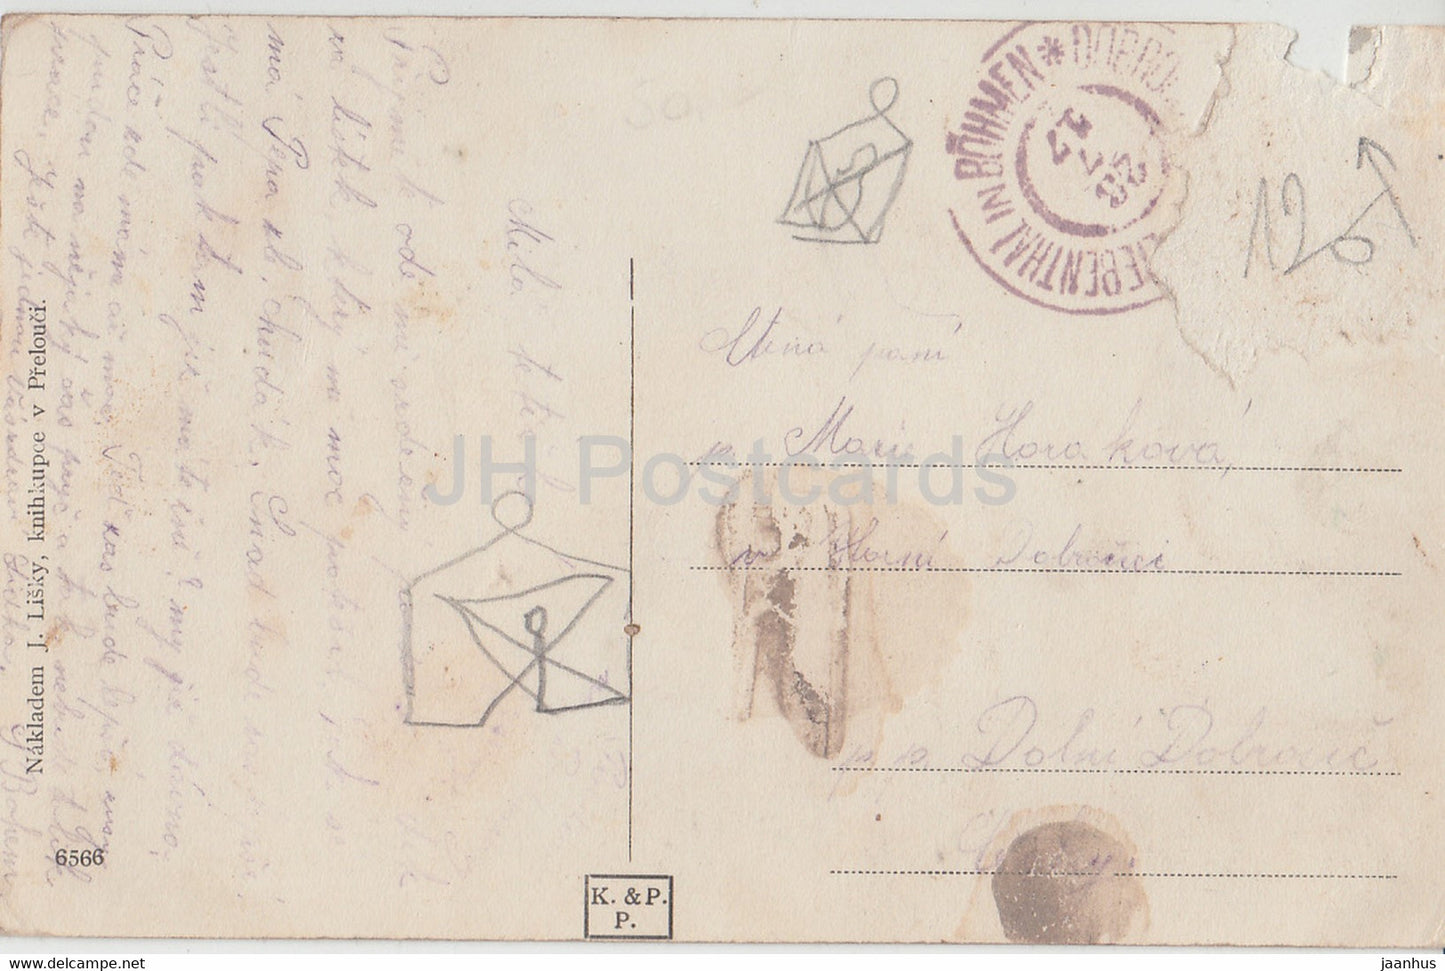 Vyrov - alte Postkarte - 1917 - Tschechien - gebraucht